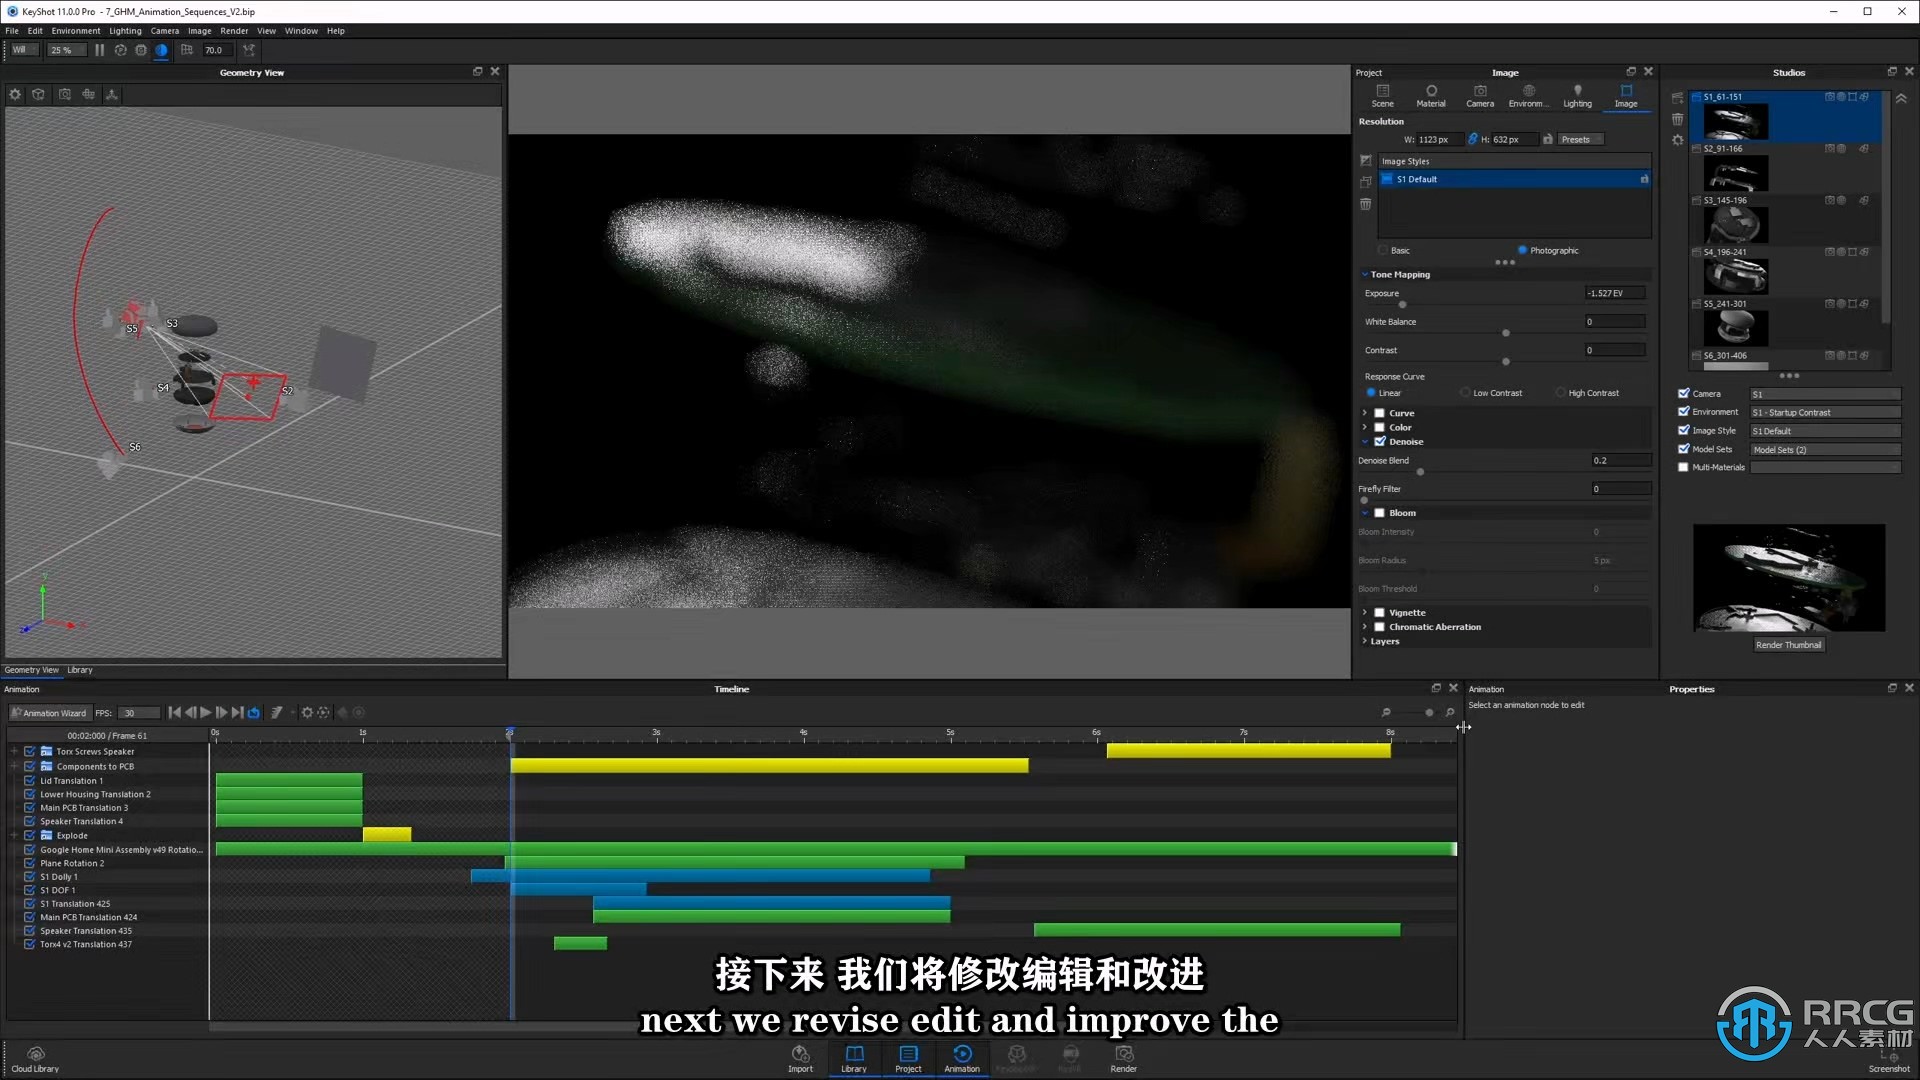 【中文字幕】KeyShot动画核心技术大师班视频教程